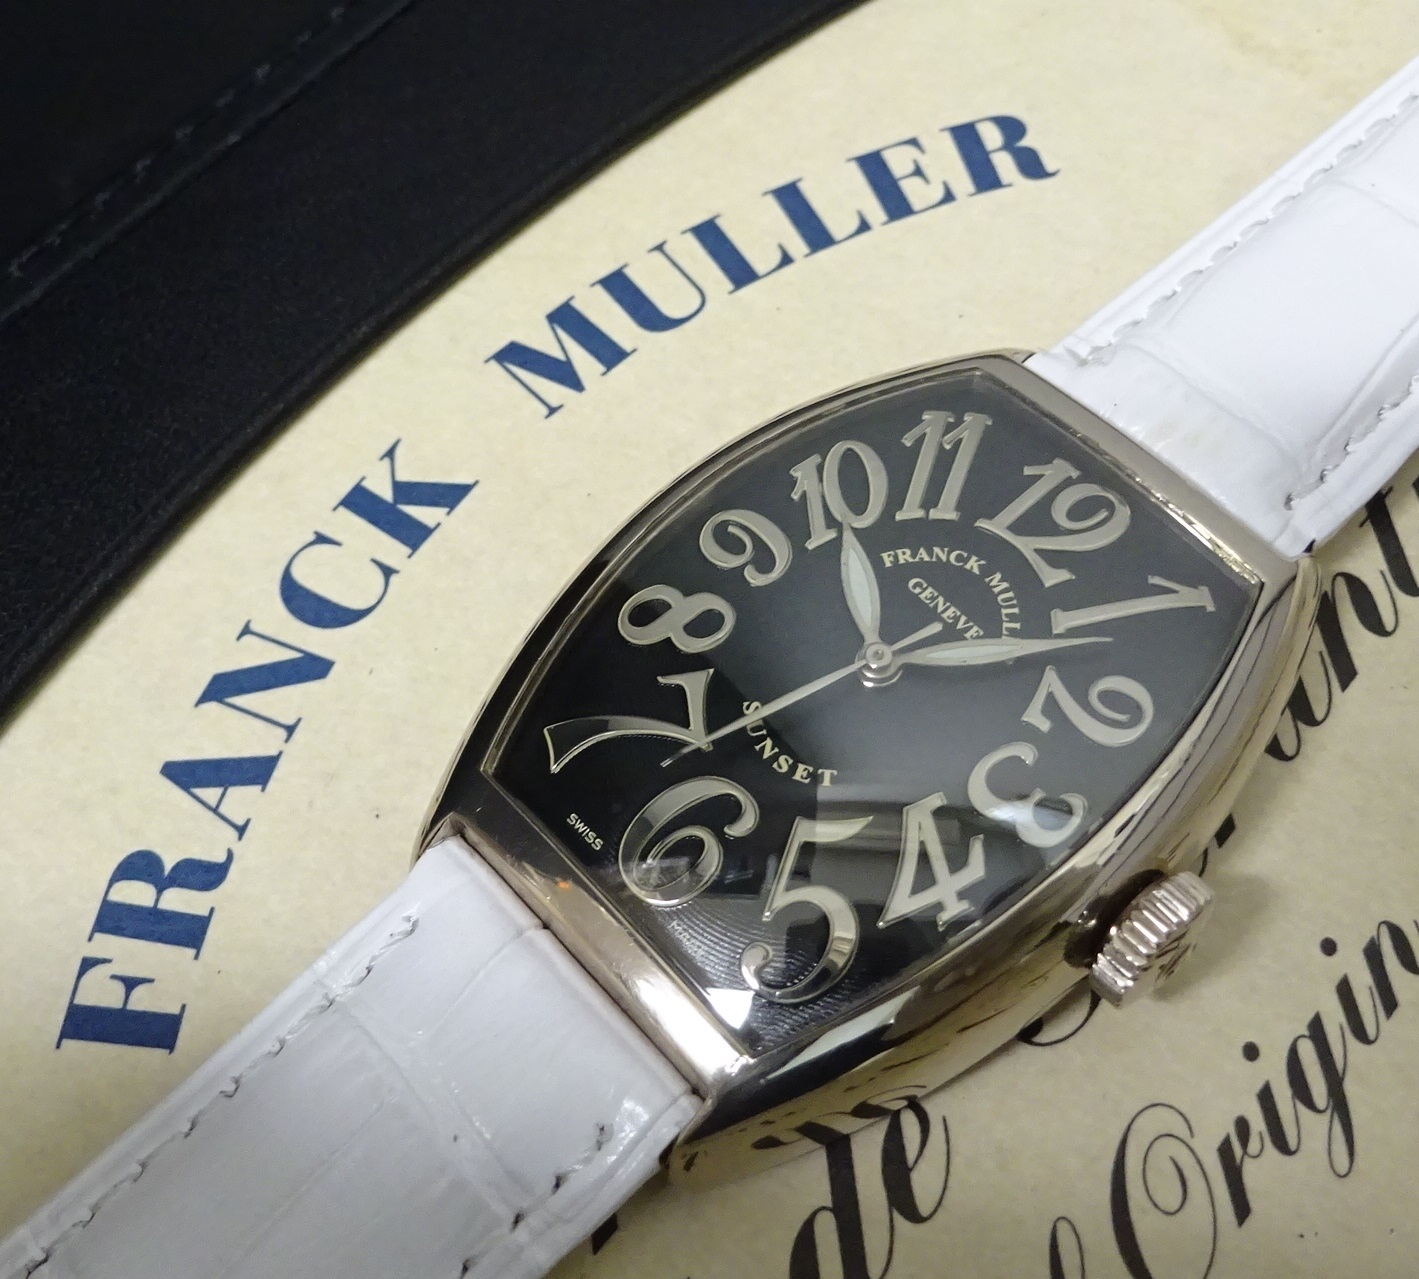 保証期間K18WG 金無垢 FRANCK MULLER フランクミュラー 5850 サンセット 黒文字盤 メンズ 自動巻 国際保証書あり 純正内外箱あり 本物 サンセット